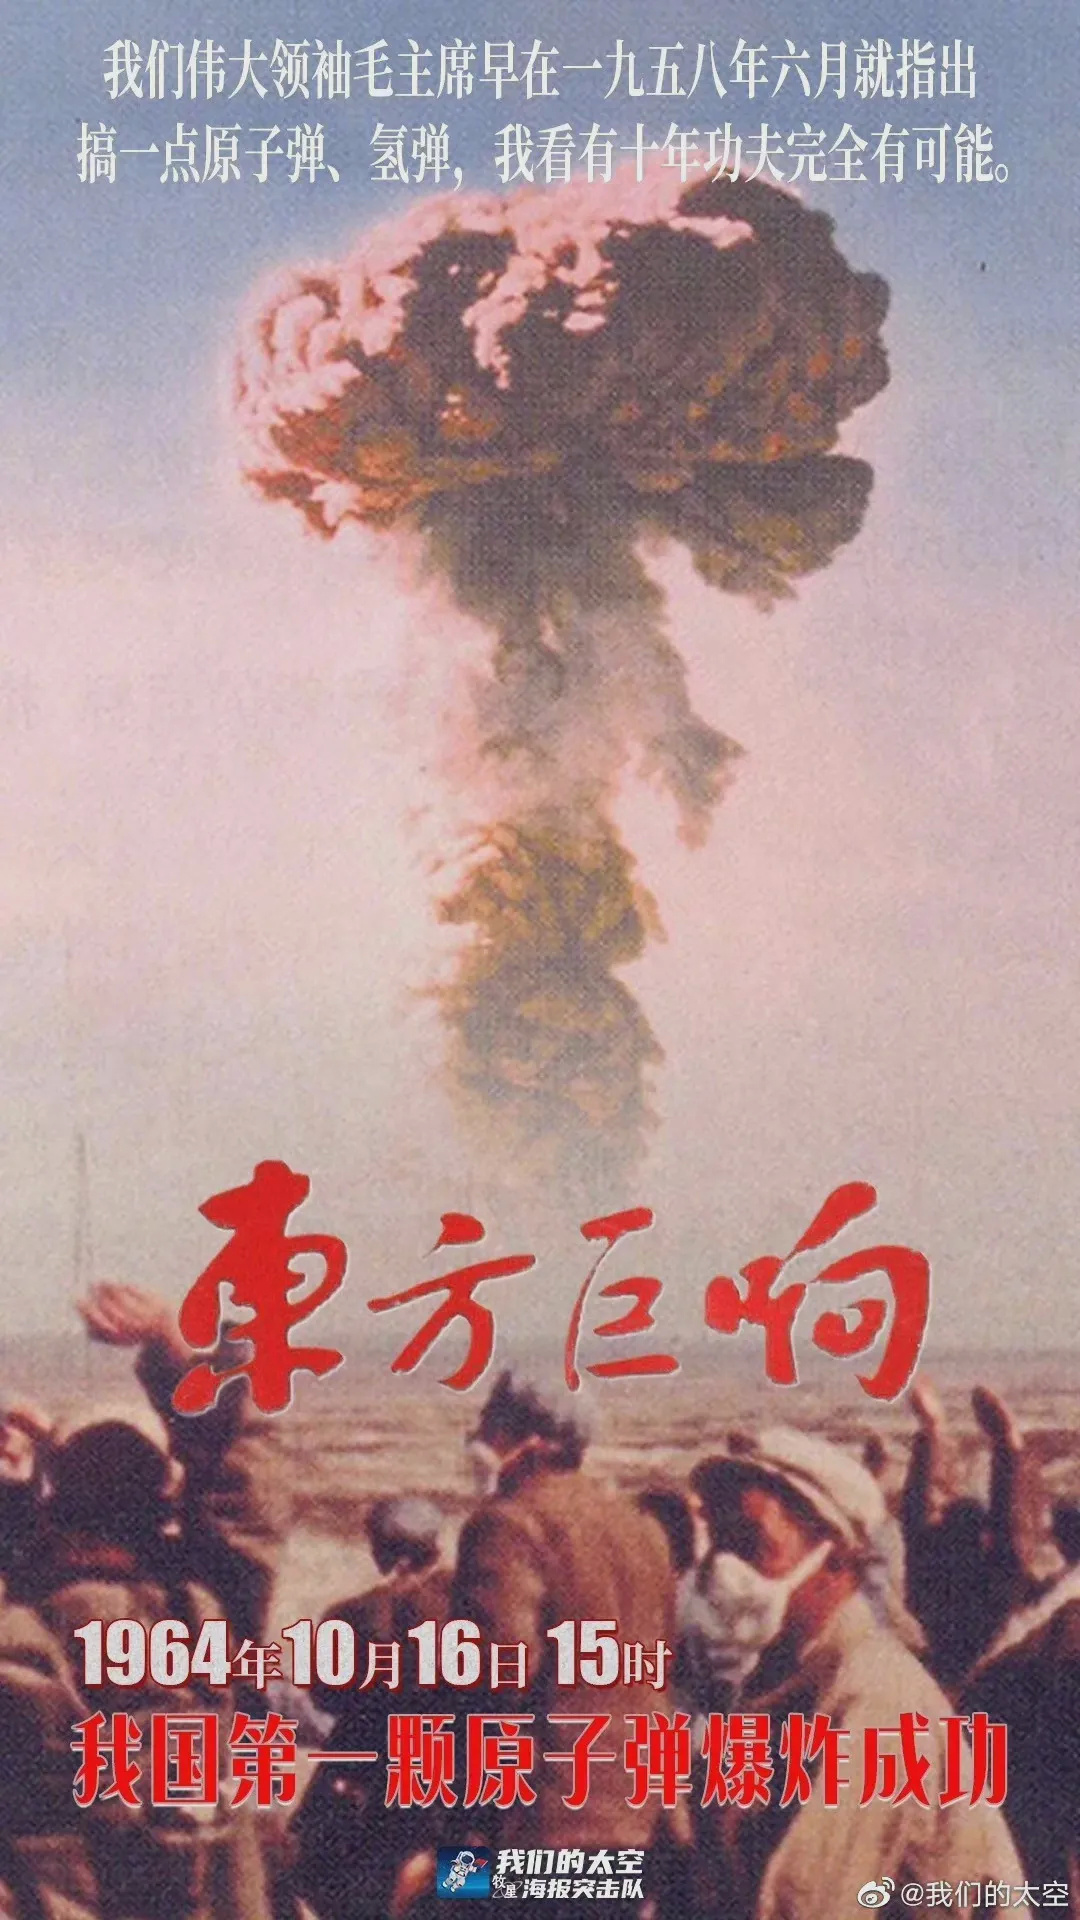 第一颗原子弹爆炸成功的信号那是中国自主研发的炸出了一朵巨大的蘑菇